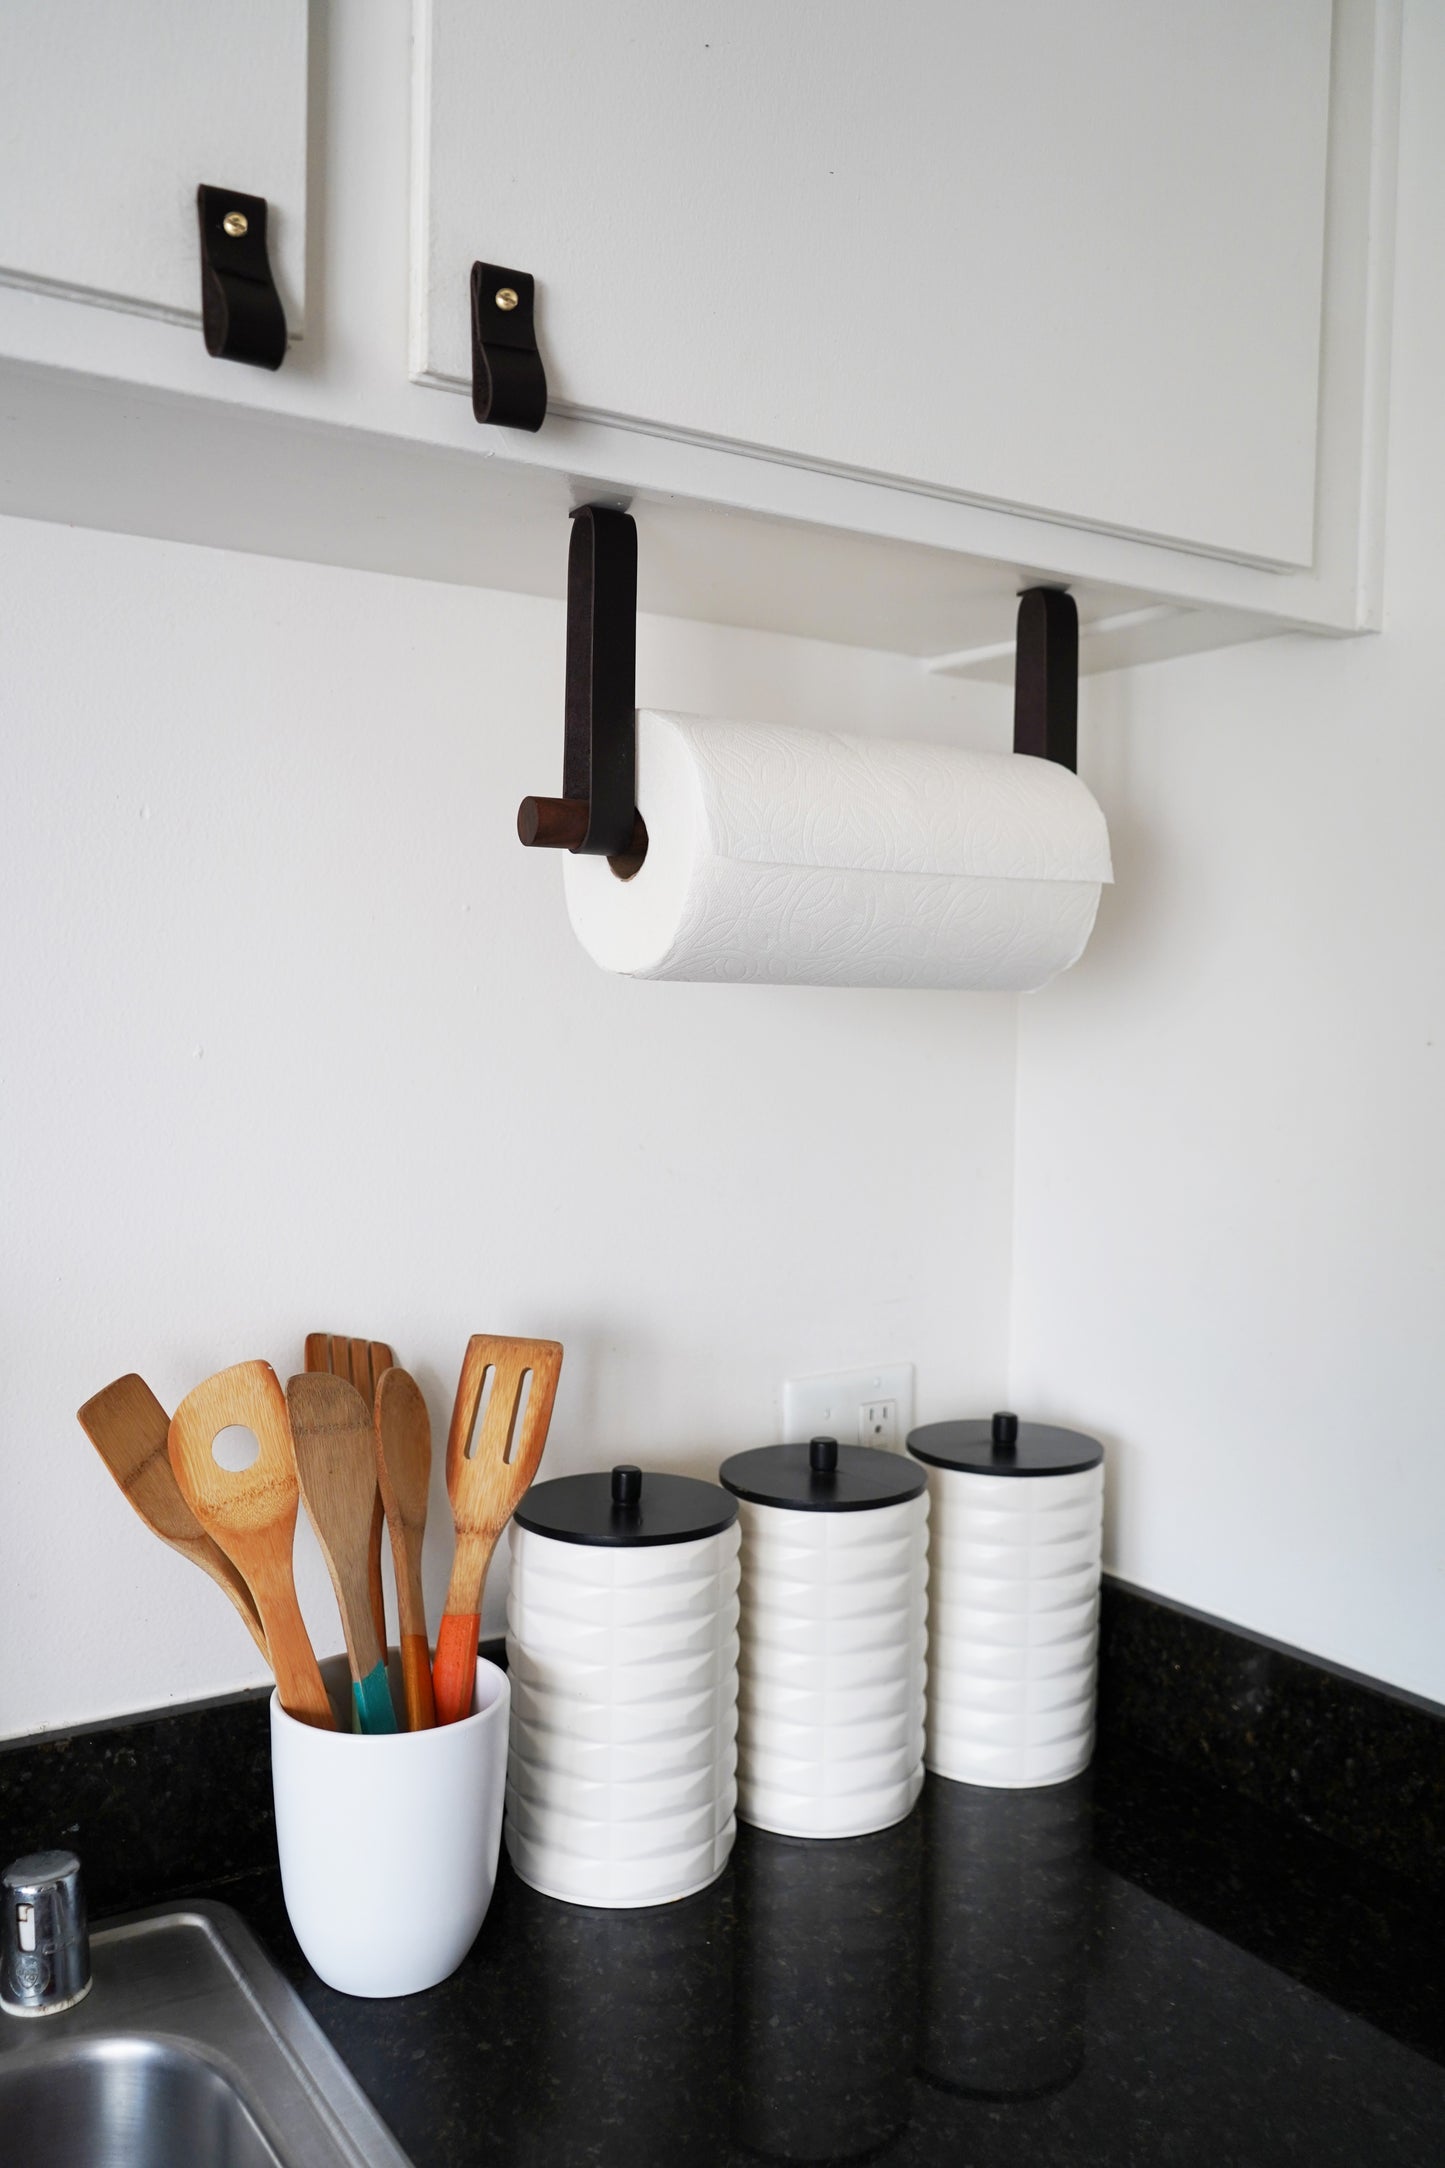  Upgraded Calegency Paper Towel Holder Under Cabinet